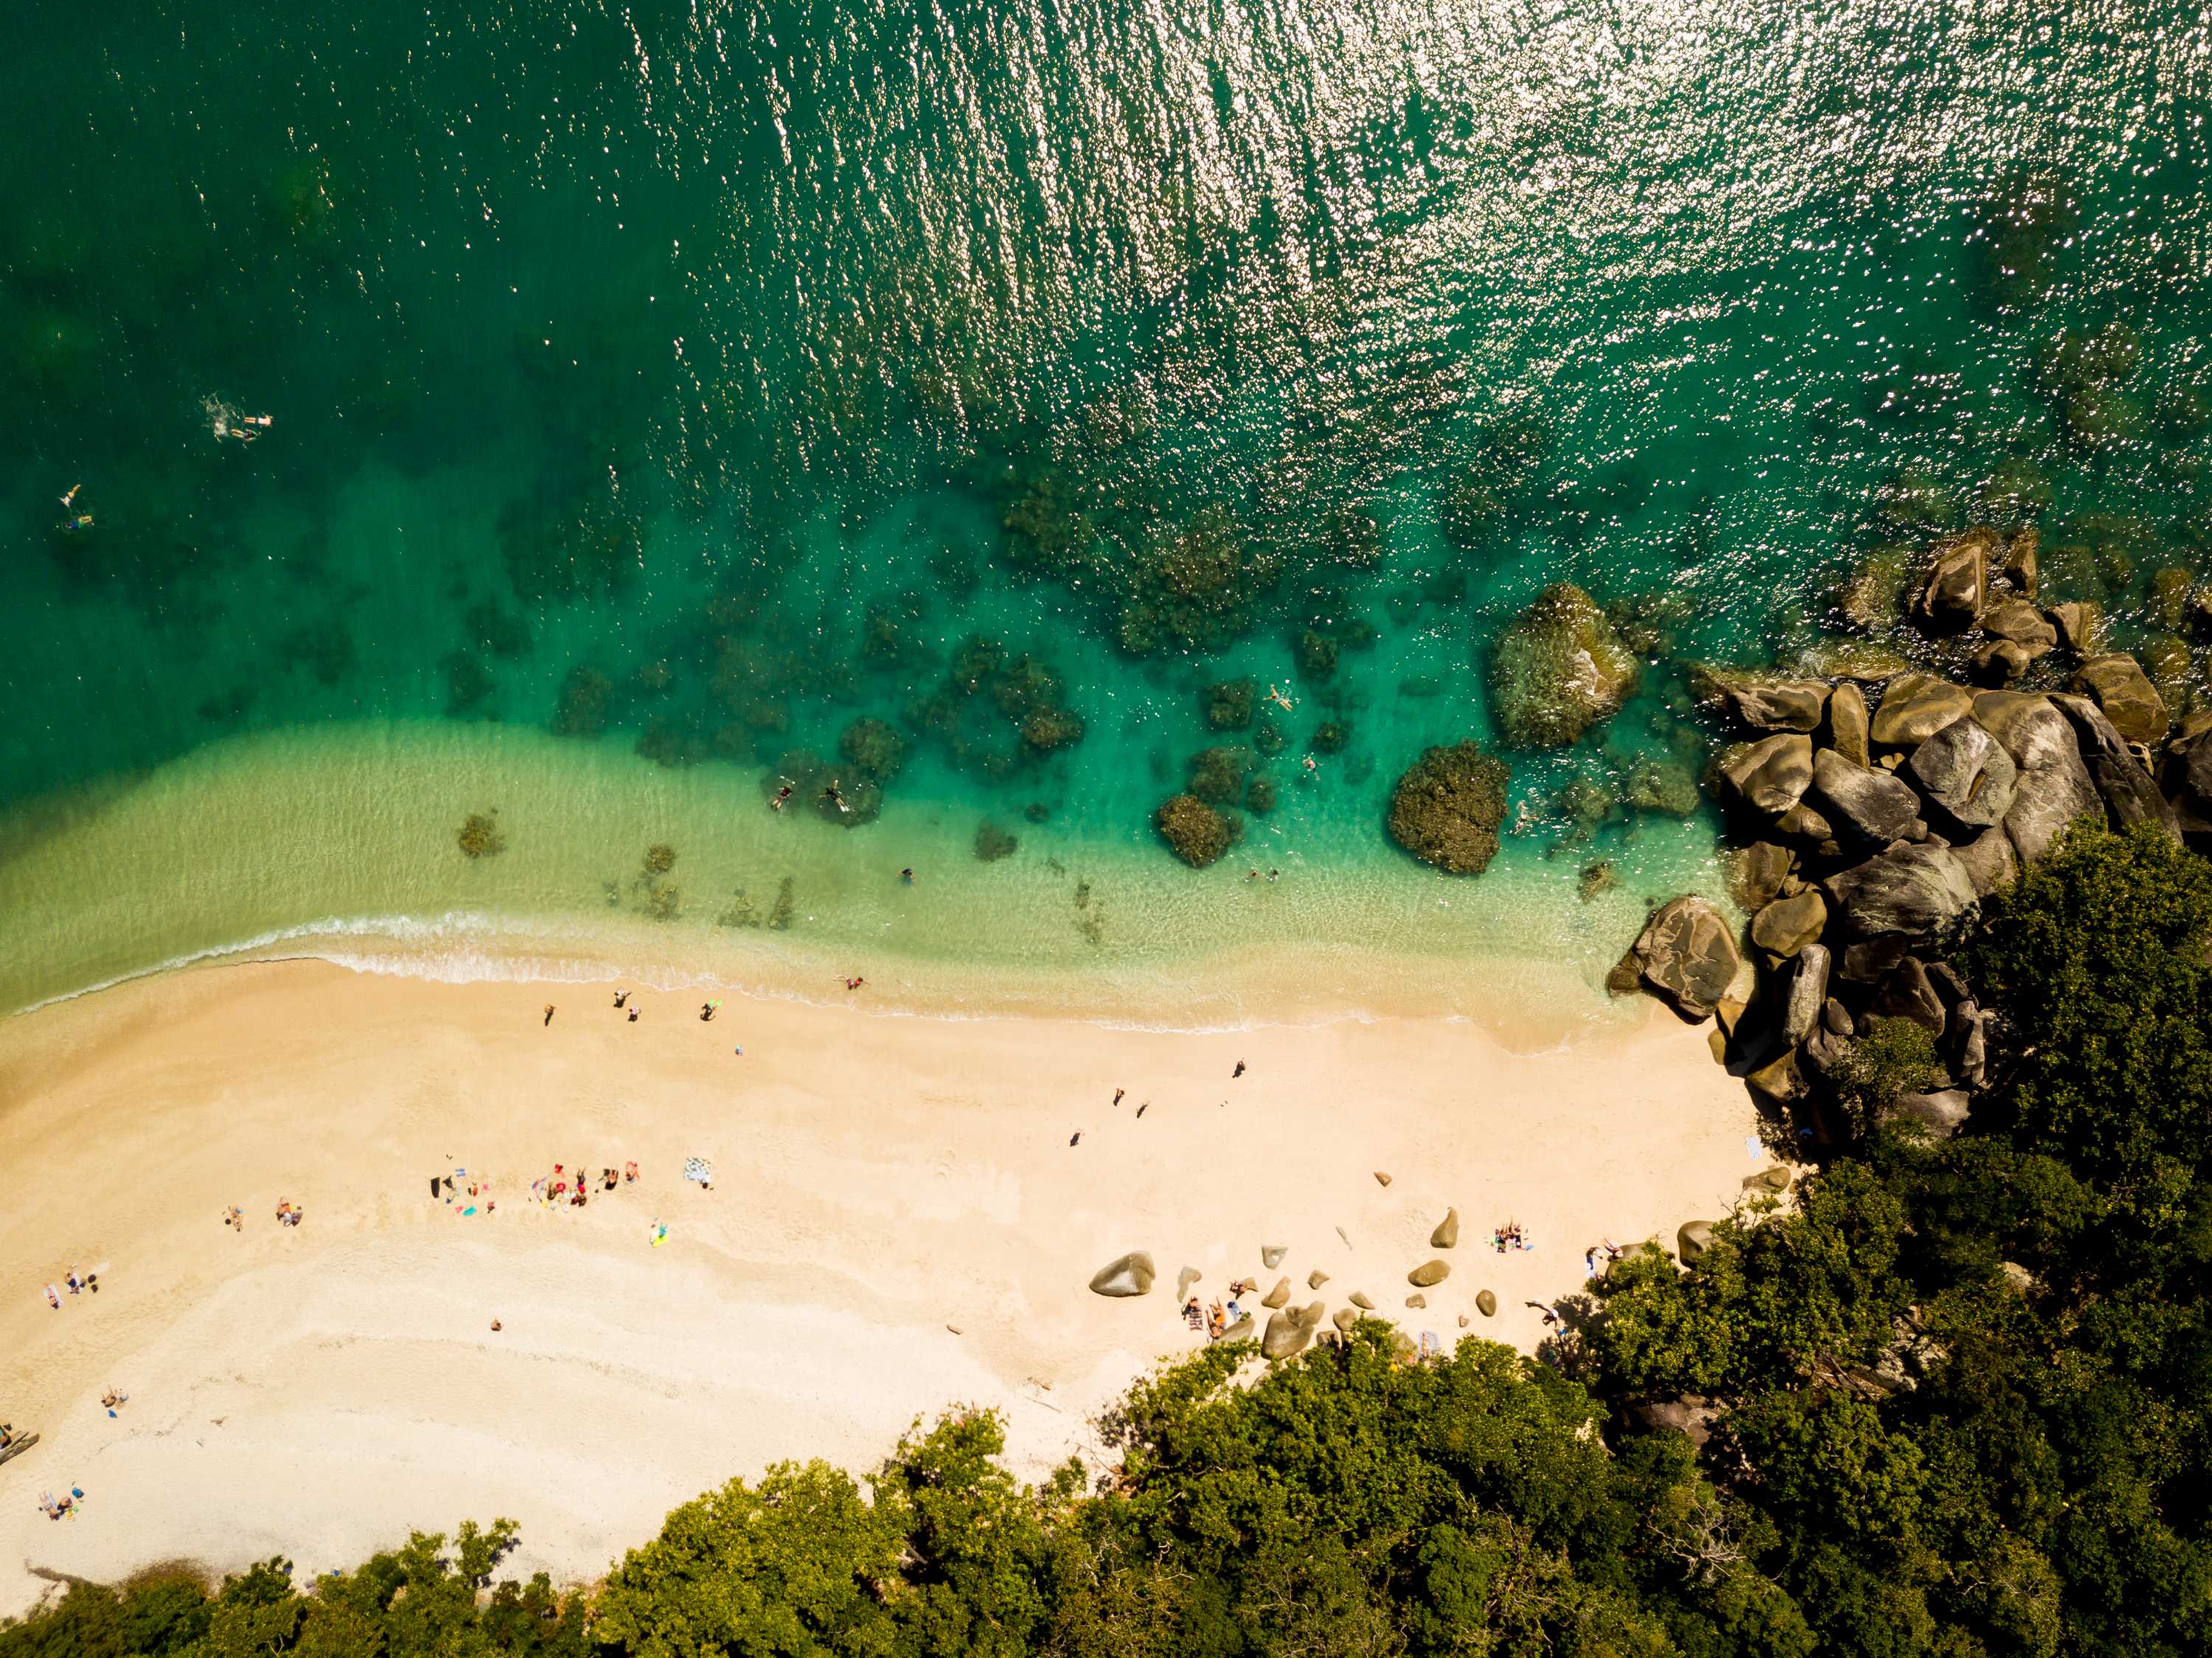 菲茨罗伊岛的海洋与沙滩和岩石相遇的鸟瞰图。